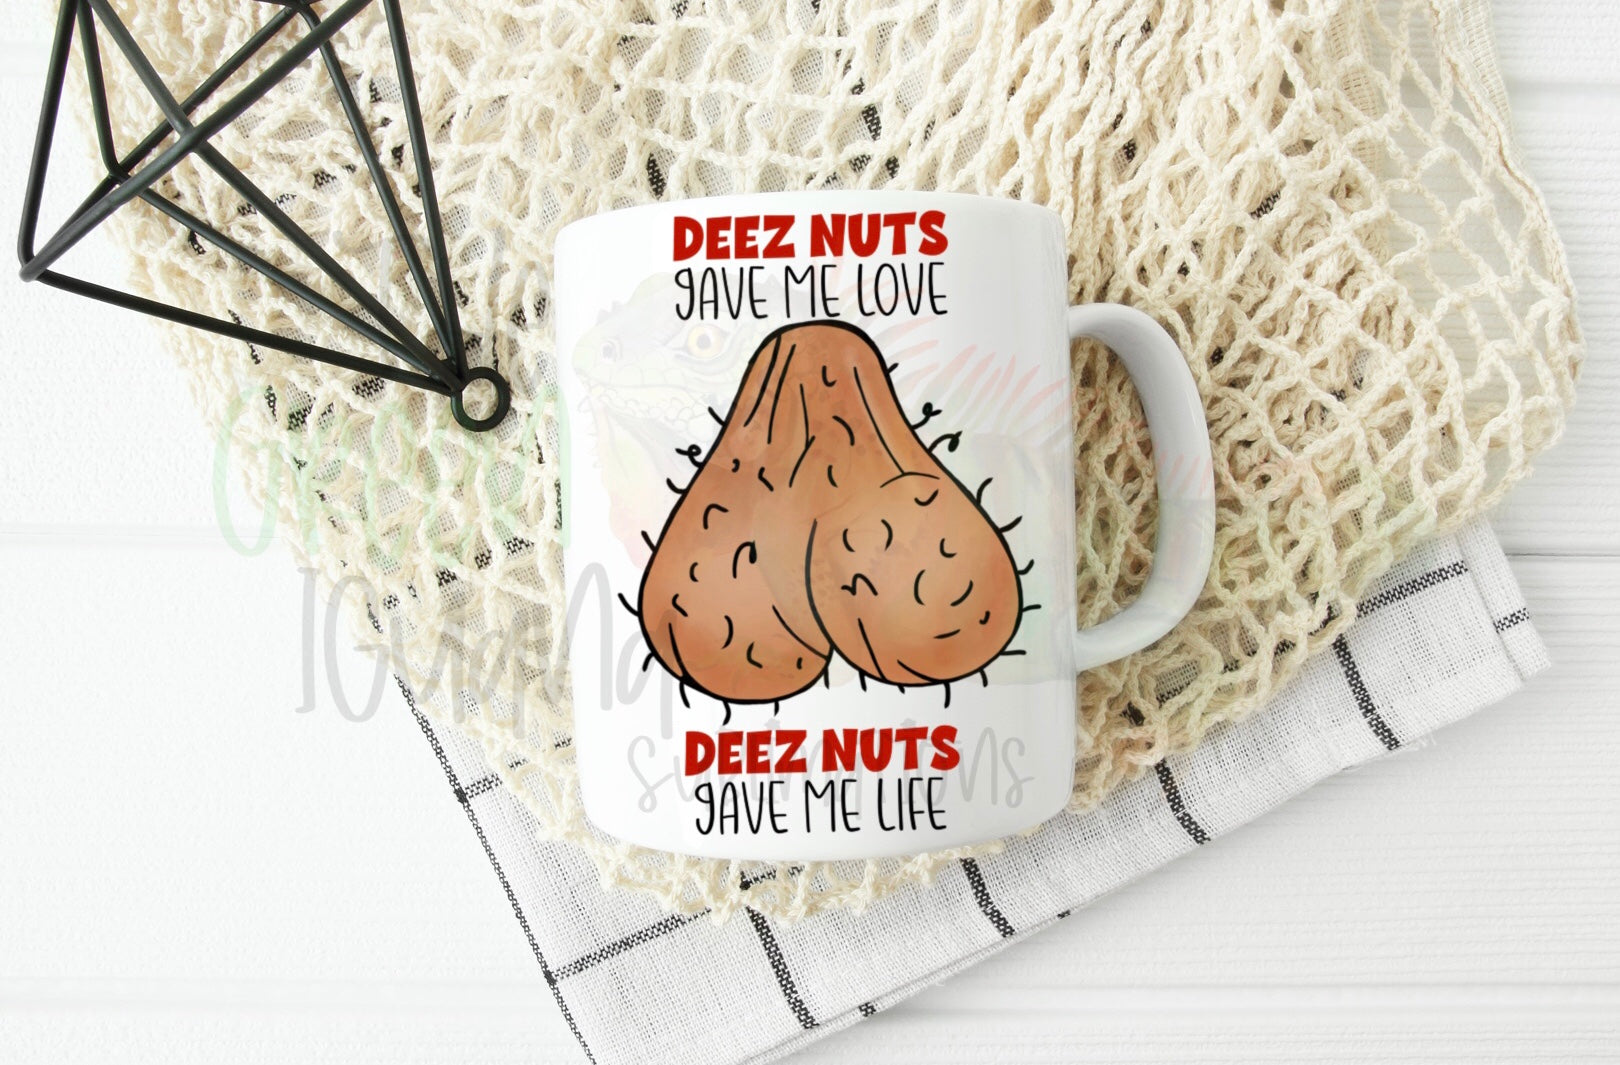 Deez nuts gave me love, deez nuts gave me life